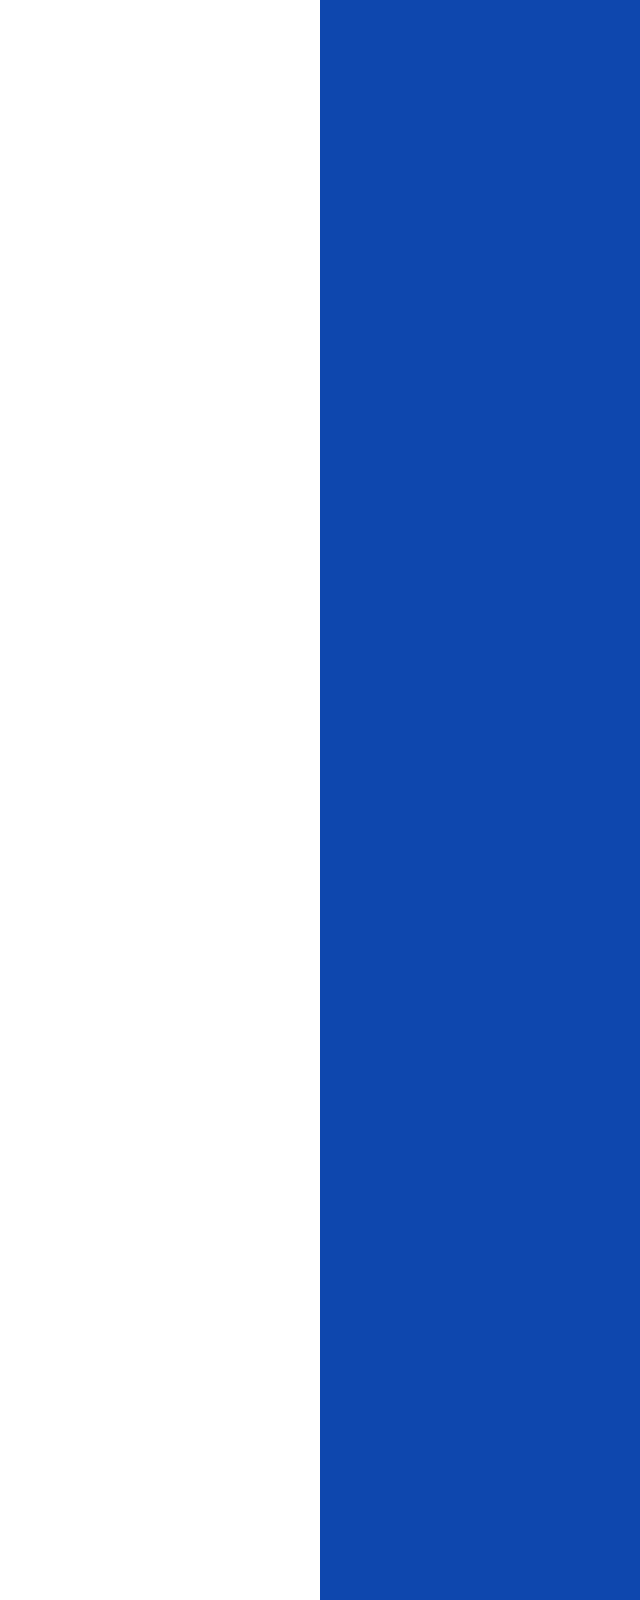 White-blue-white flag - Wikipedia